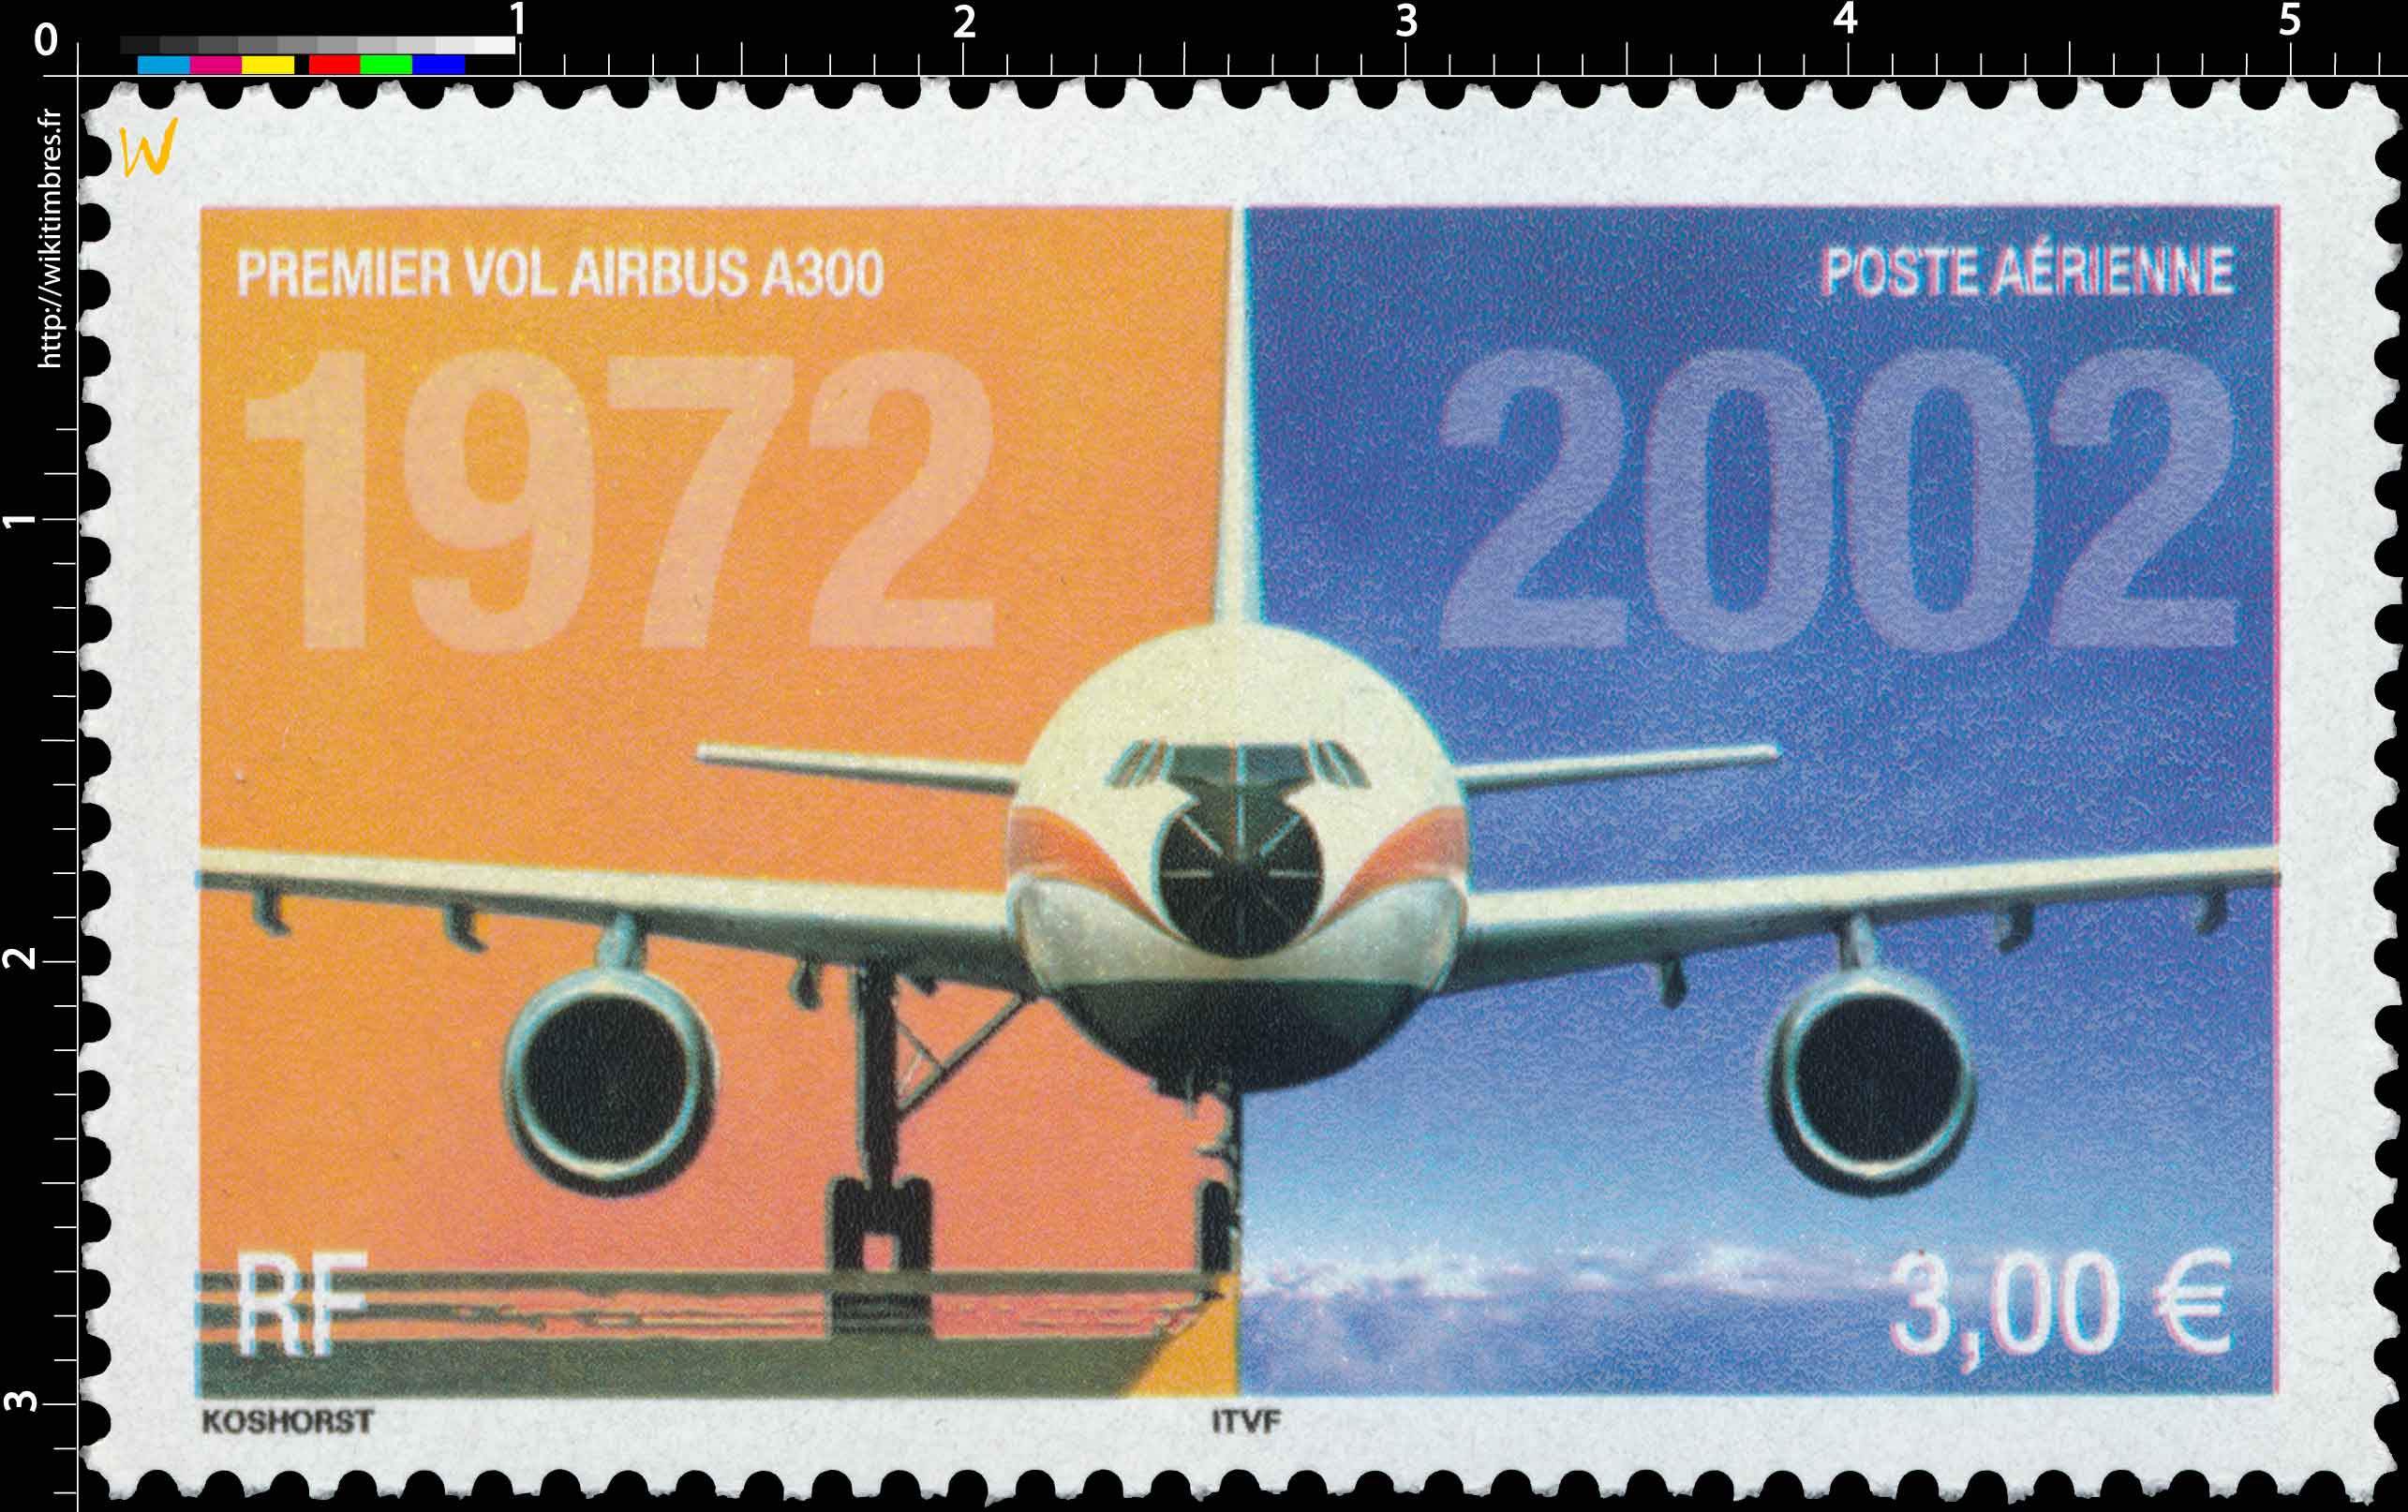 1972-2002 PREMIER VOL DE L'AIRBUS A300